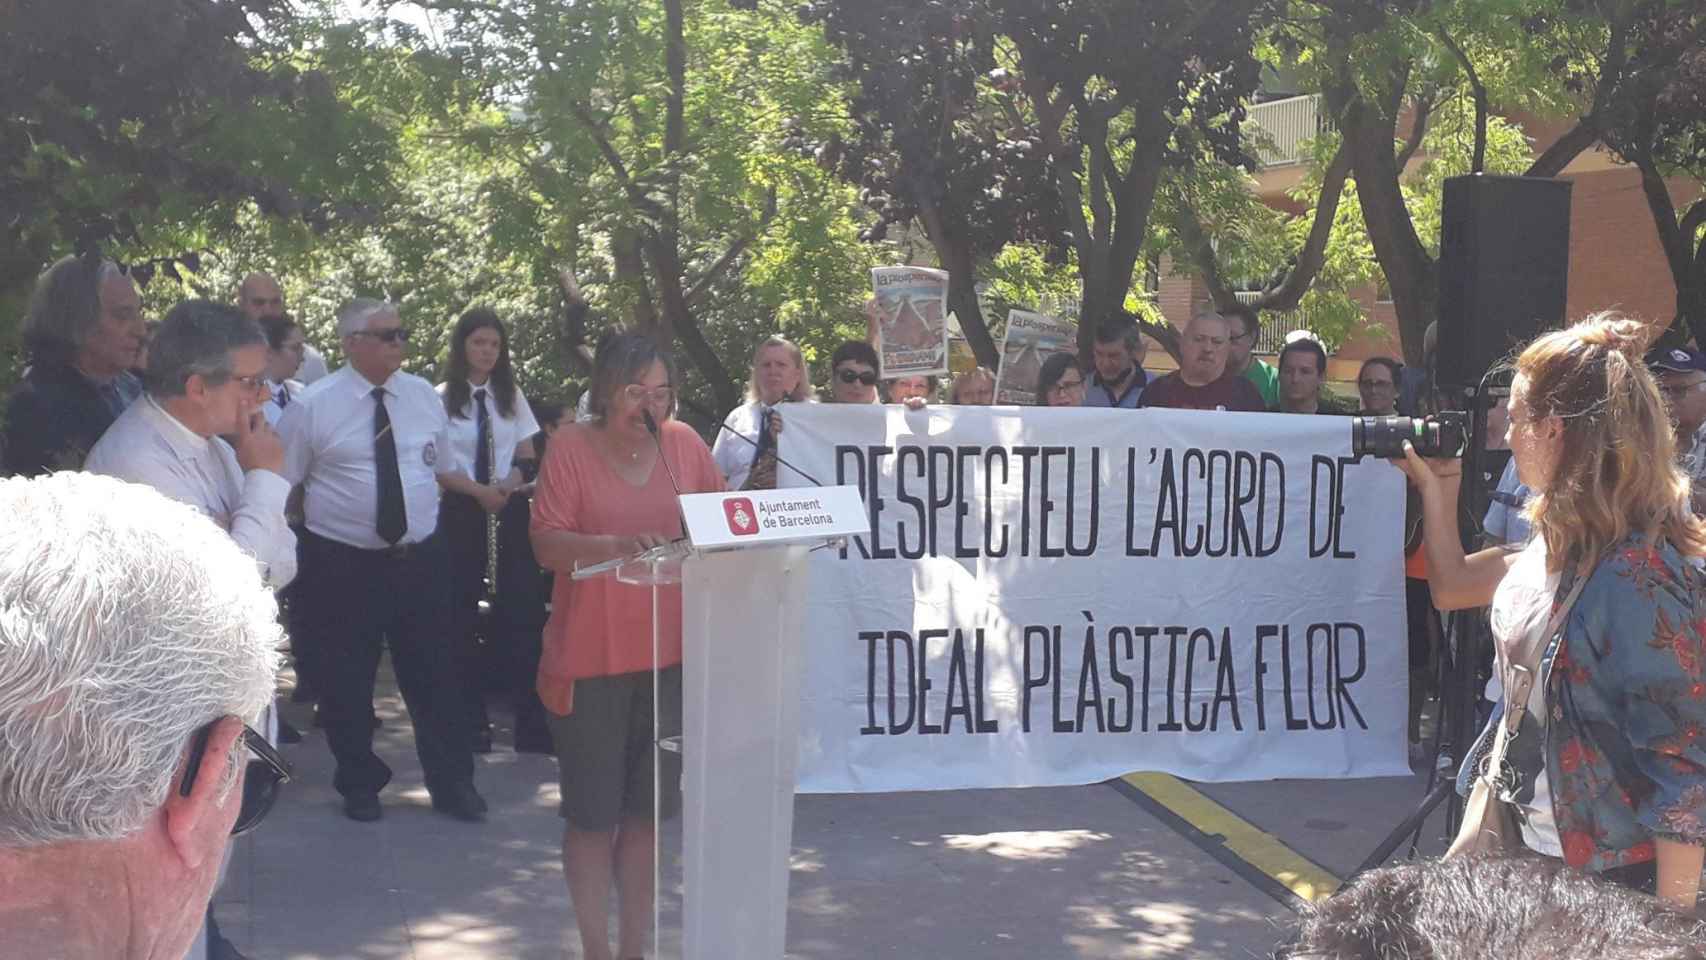 Protesta vecinal en un acto municipal contra los planes en el solar de Ideal Plástica Flor / TWITTER